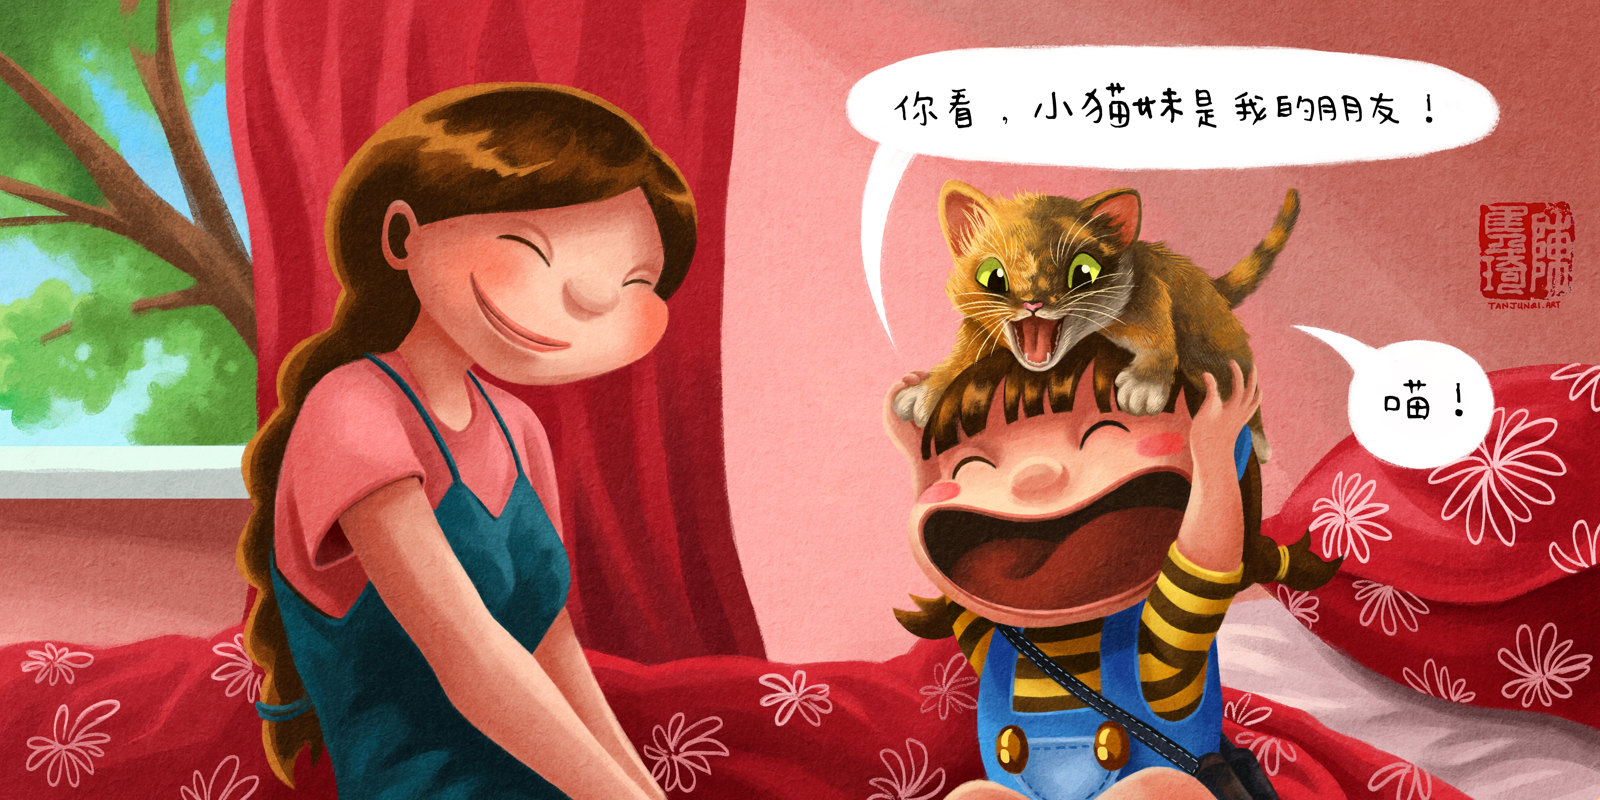 《珊珊没有朋友？》儿童绘本中的跨页图(中文版)，珊珊正在逗趴在她头上的小猫妹玩，跟带着微笑的妈妈说小猫妹是他的朋友。